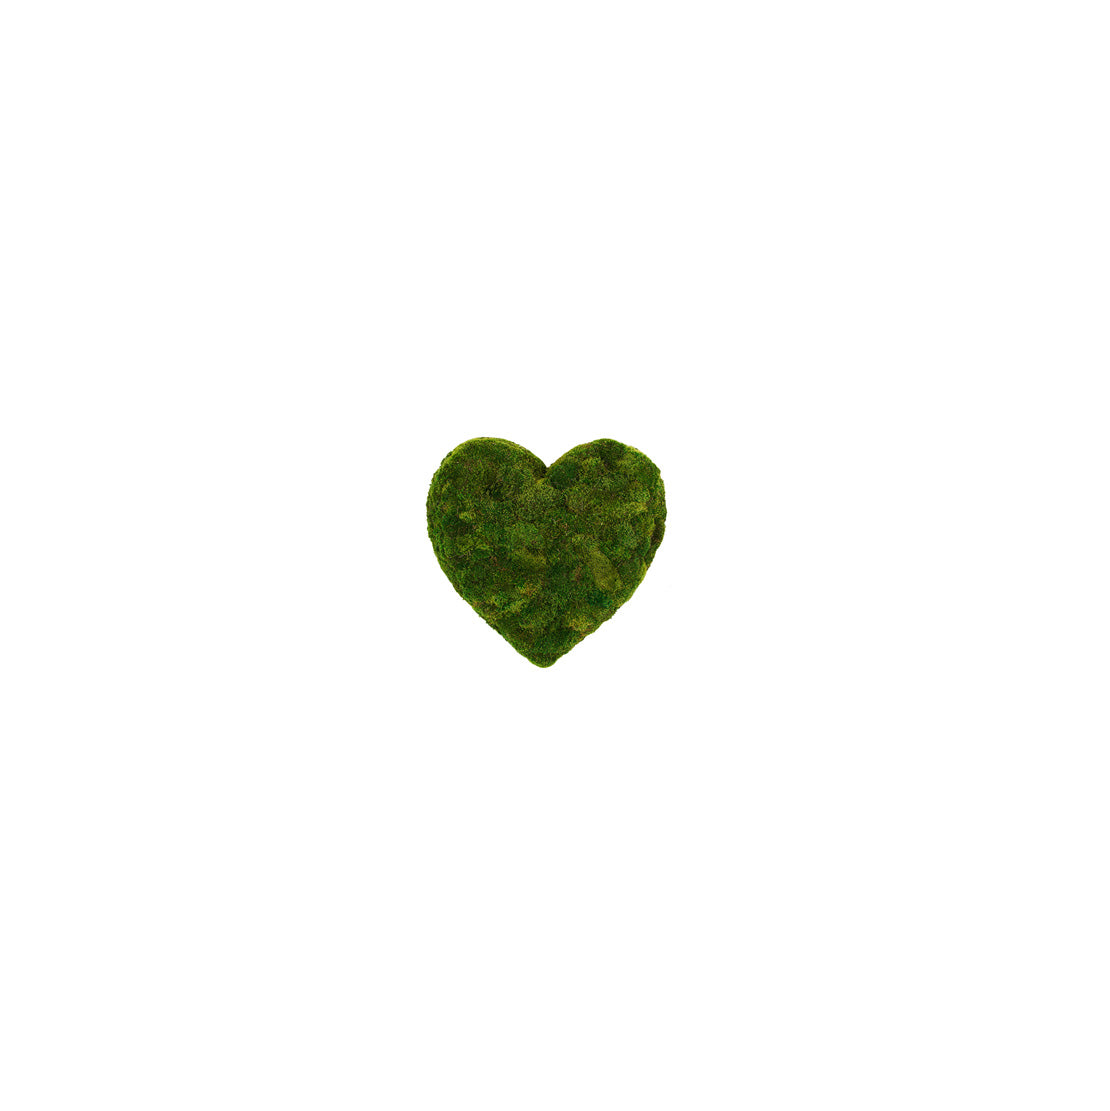 Moss Heart